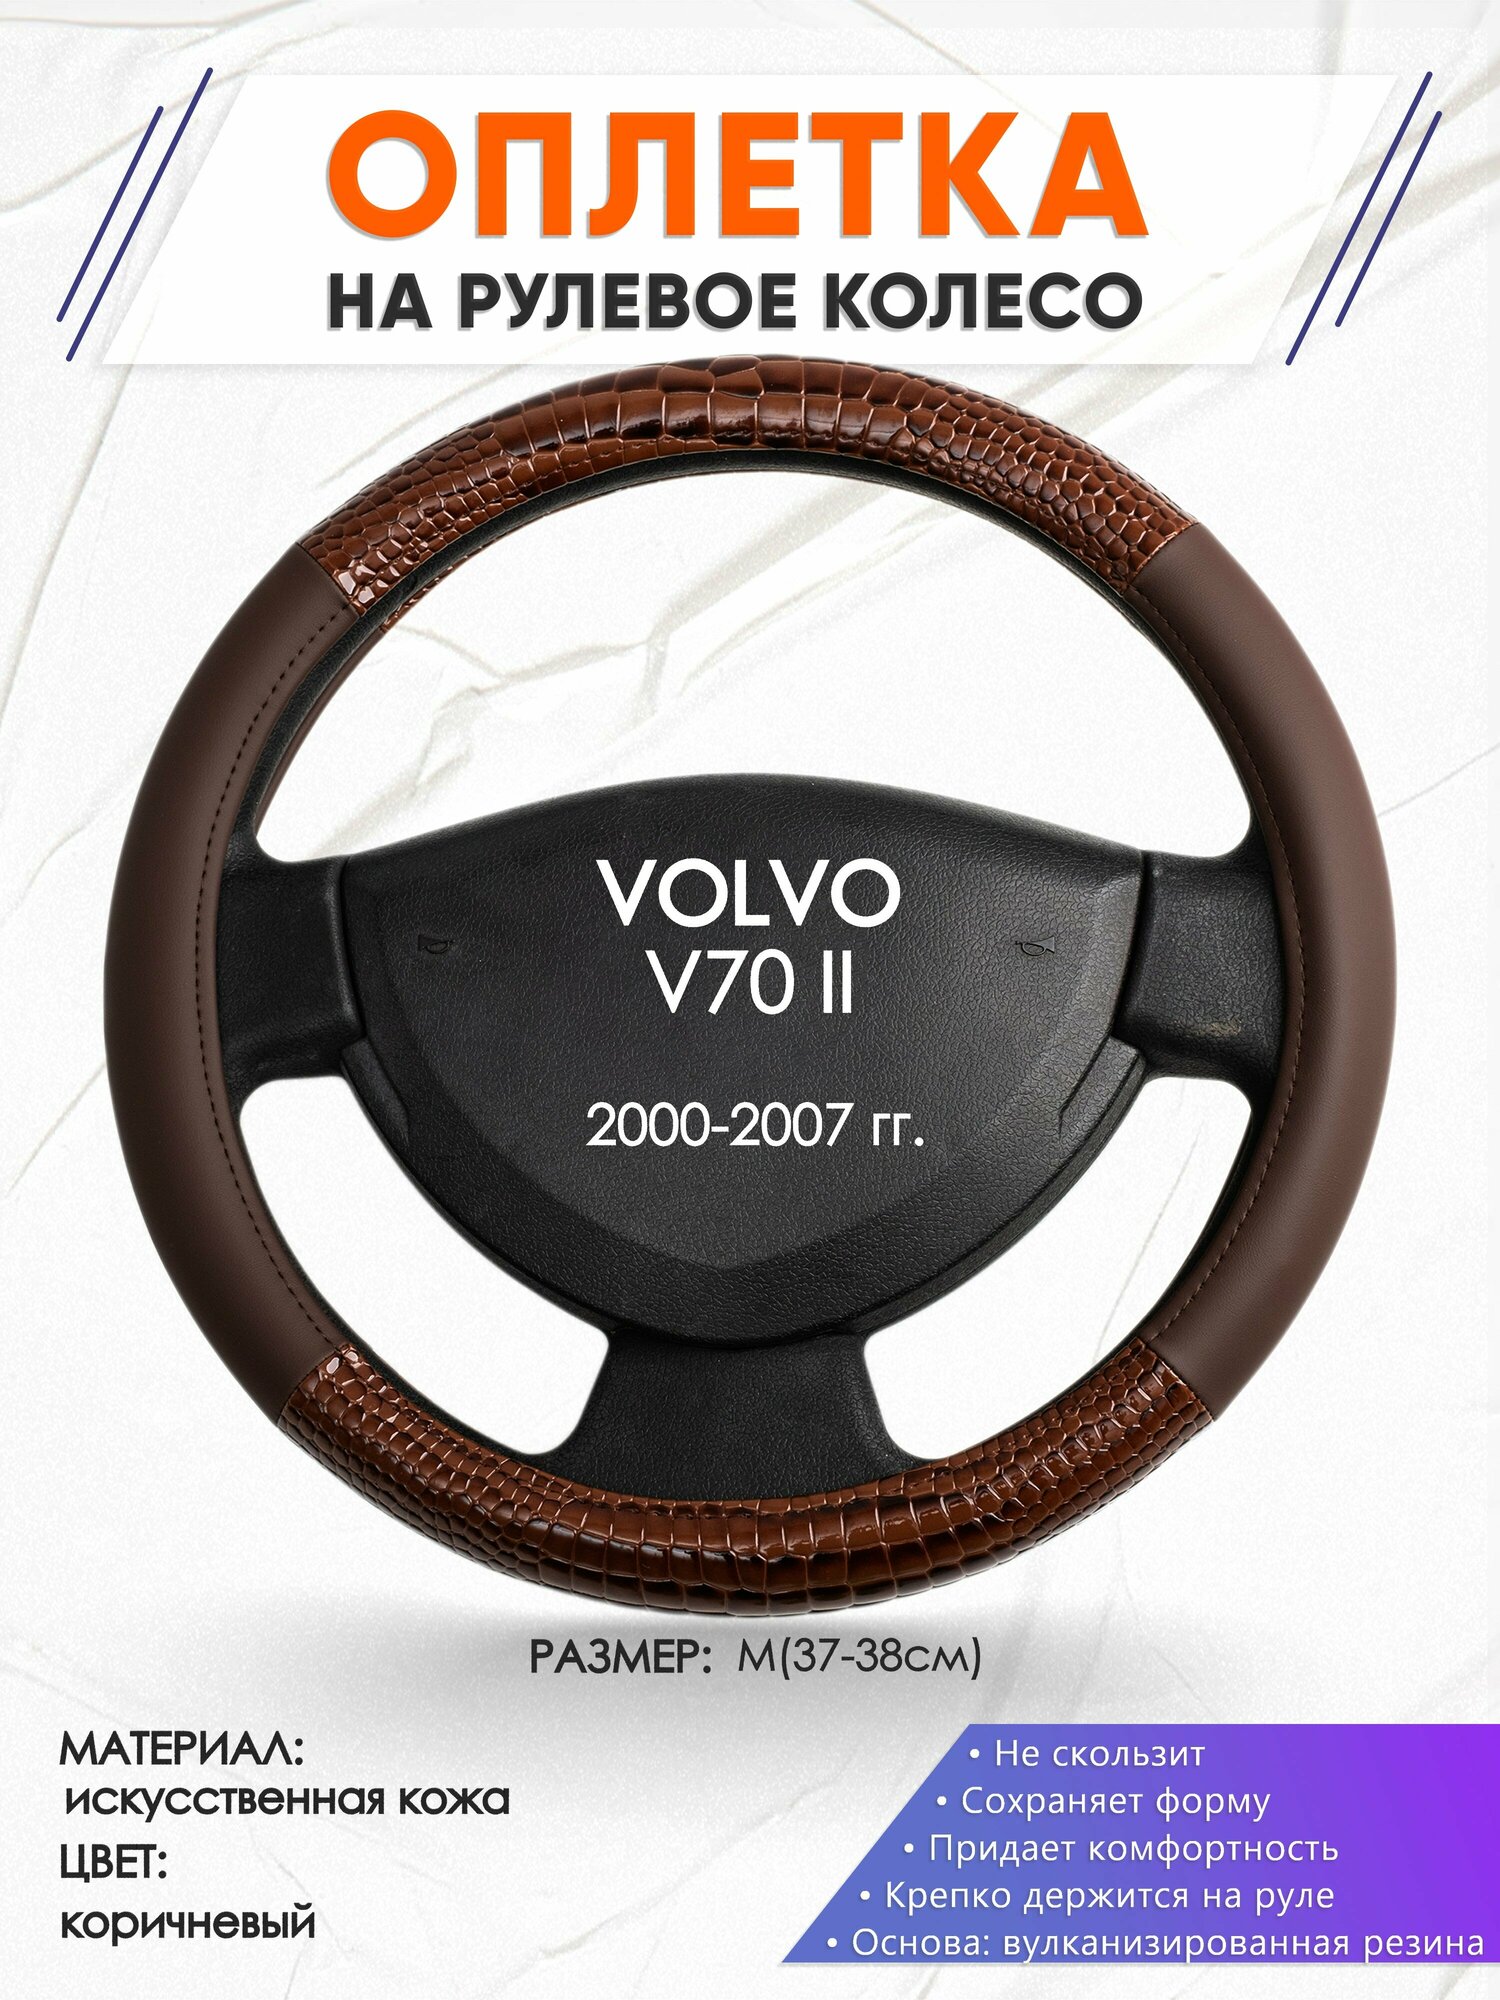 Оплетка наруль для VOLVO V70 II(Вольво в70) 2000-2007 годов выпуска, размер M(37-38см), Искусственная кожа 85